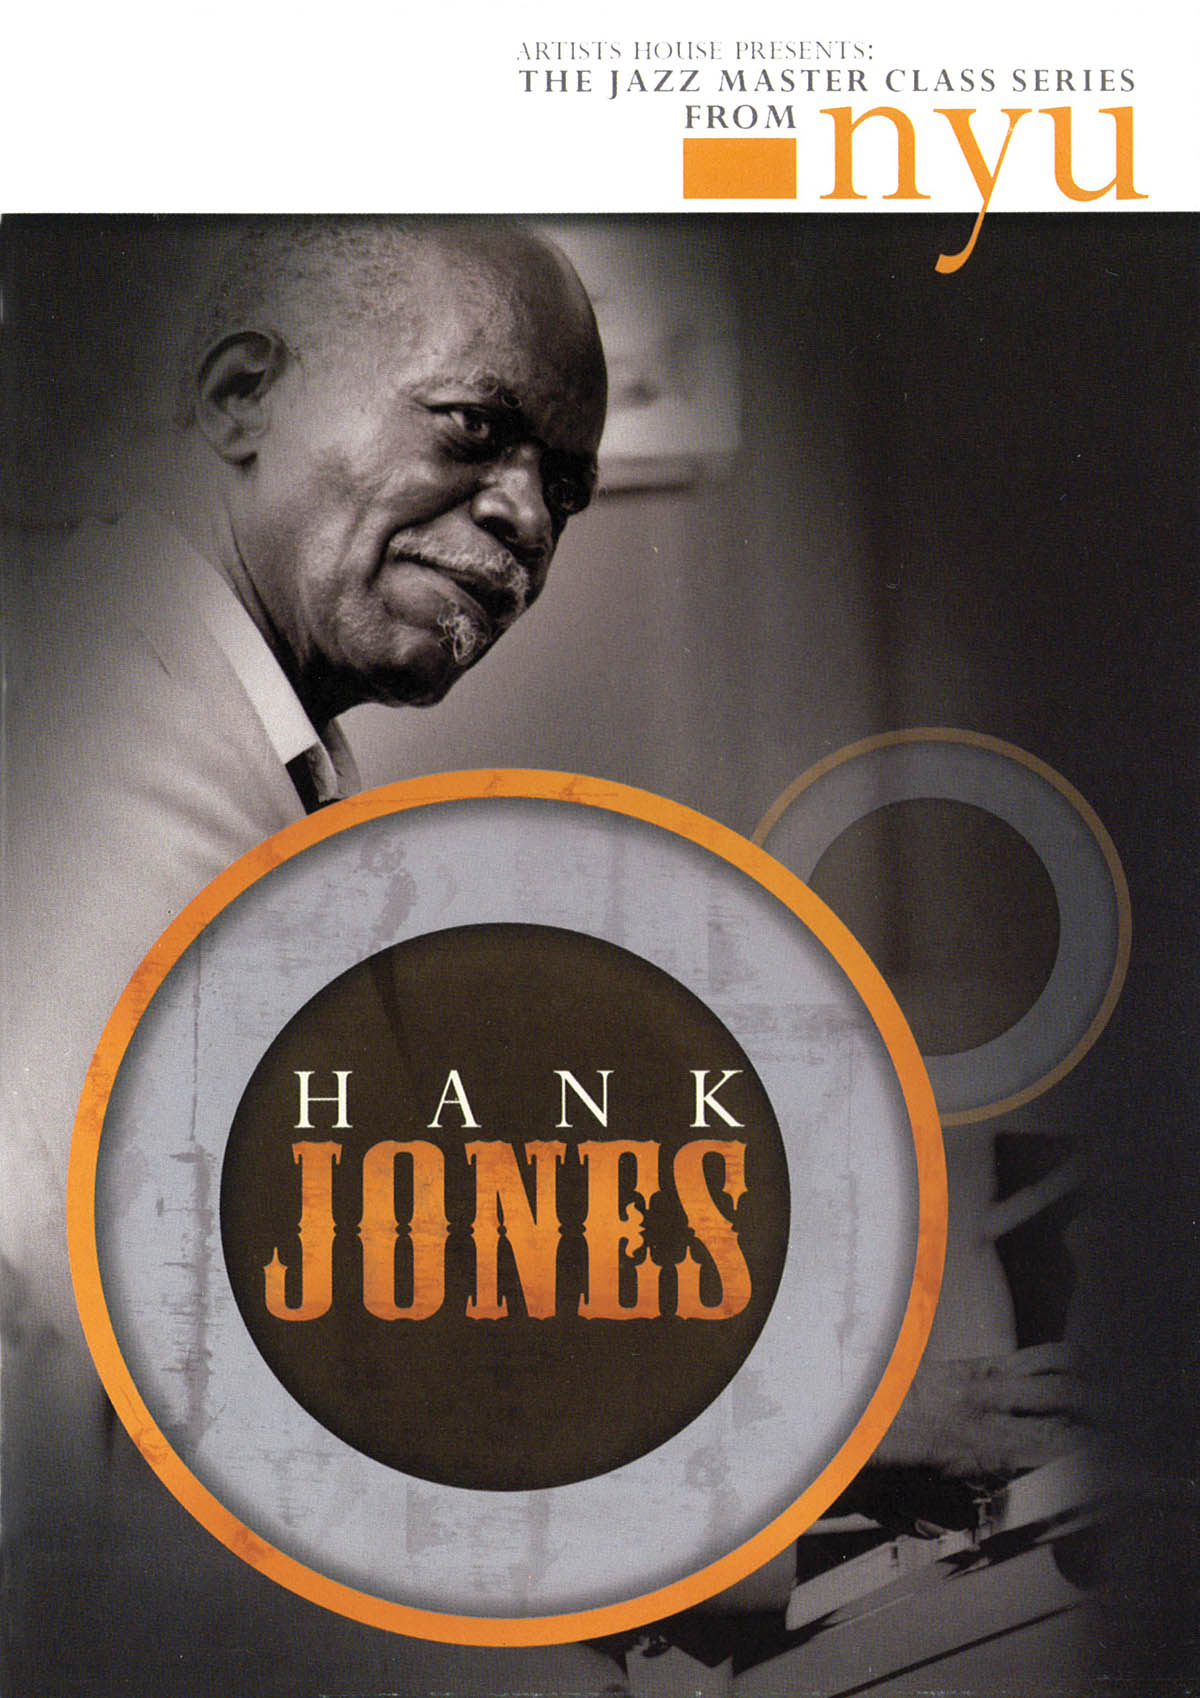 Hank Jones – The Jazz Master Class Series from NYU